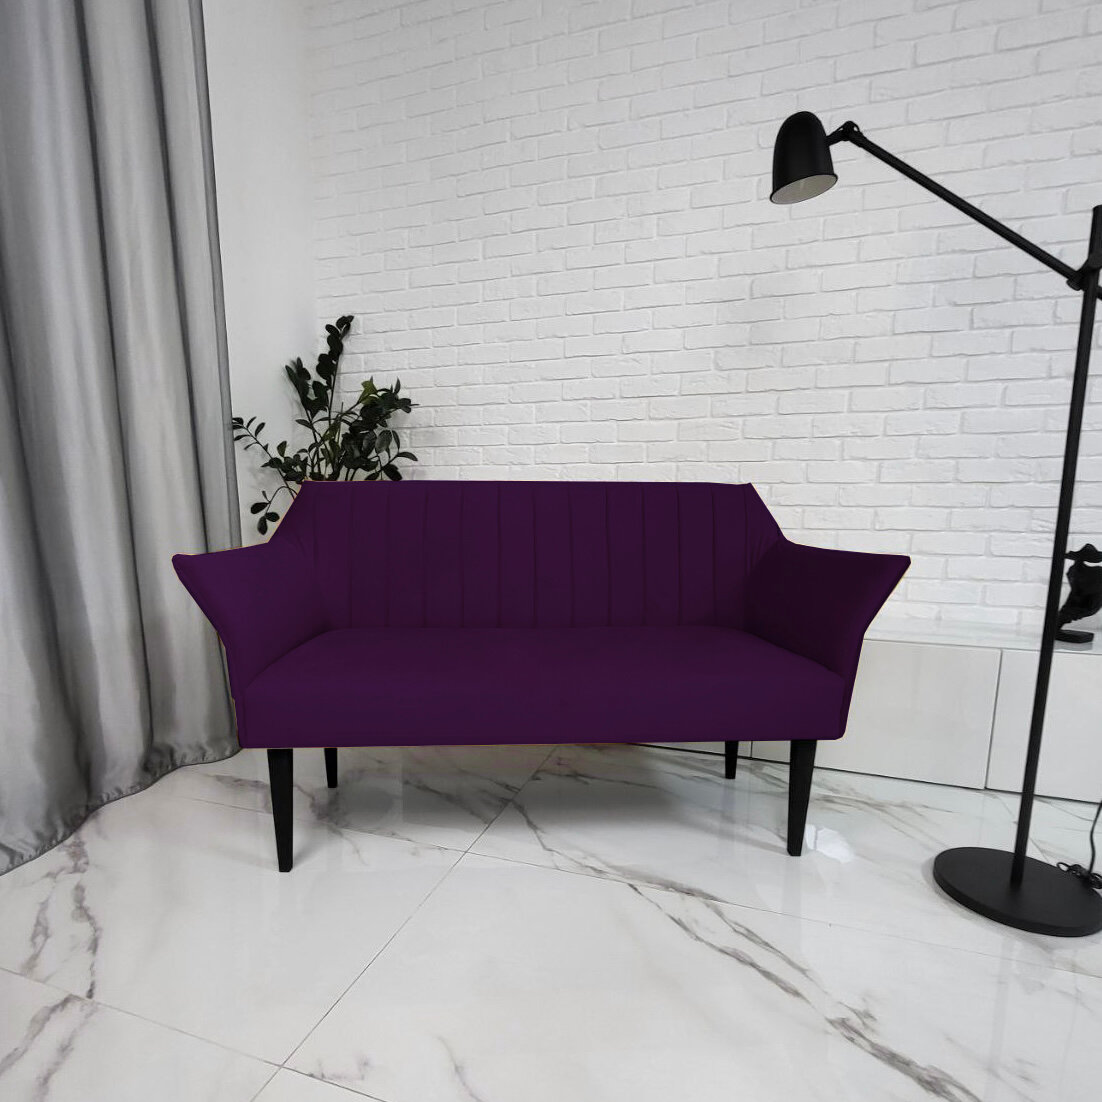 Прямой диван Асти, фиолетовый, в гостинную, на кухню, прихожую, хол 145х60х85 см